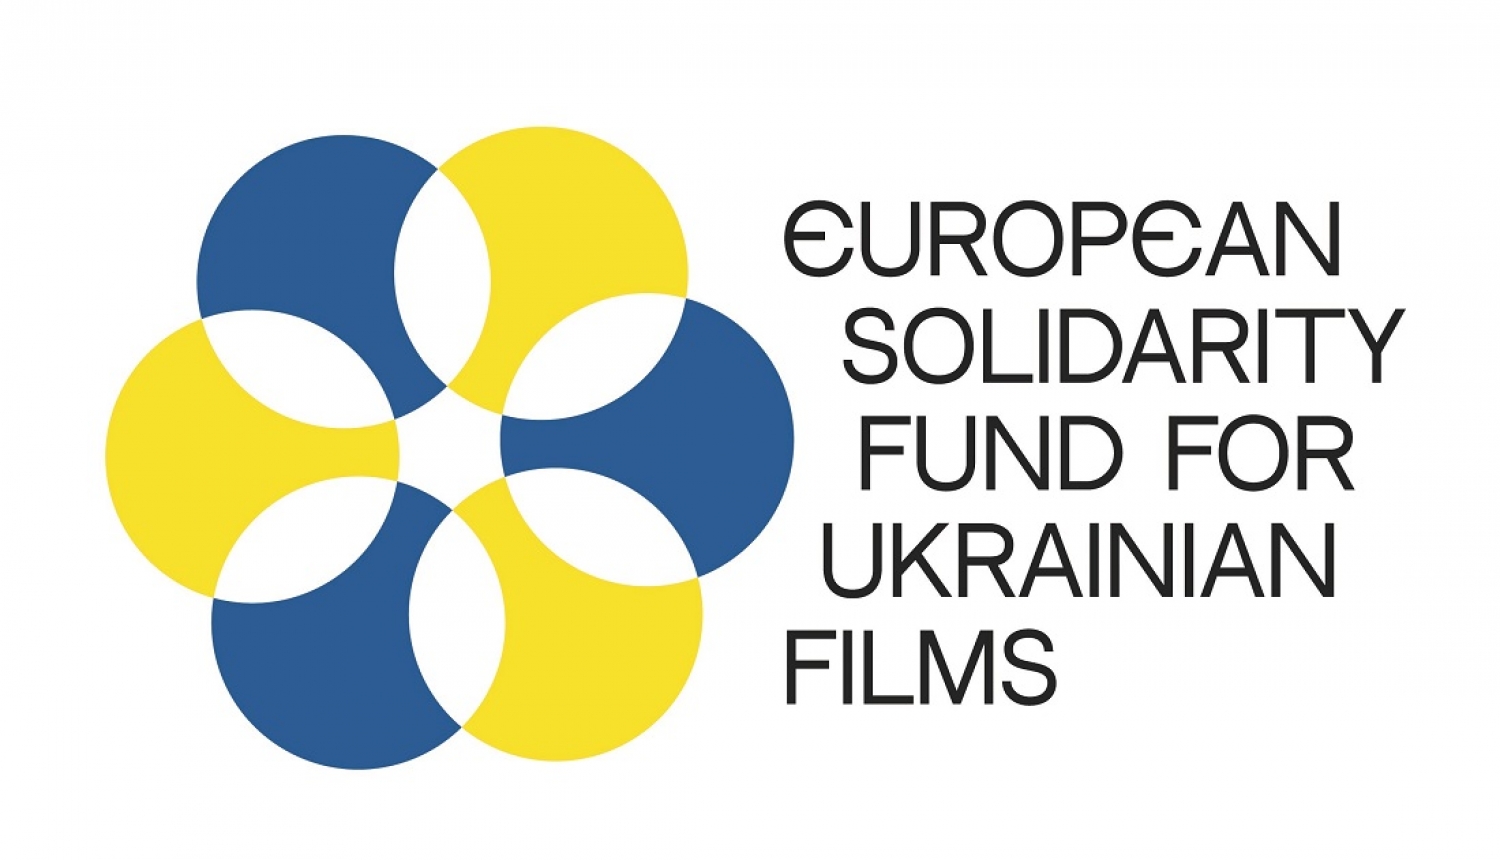 Eiropas valstu kinoinstitūciju organizācijas „Eiropas solidaritātes fonds Ukrainas filmām / European Solidarity Fund for Ukrainian Films” logo